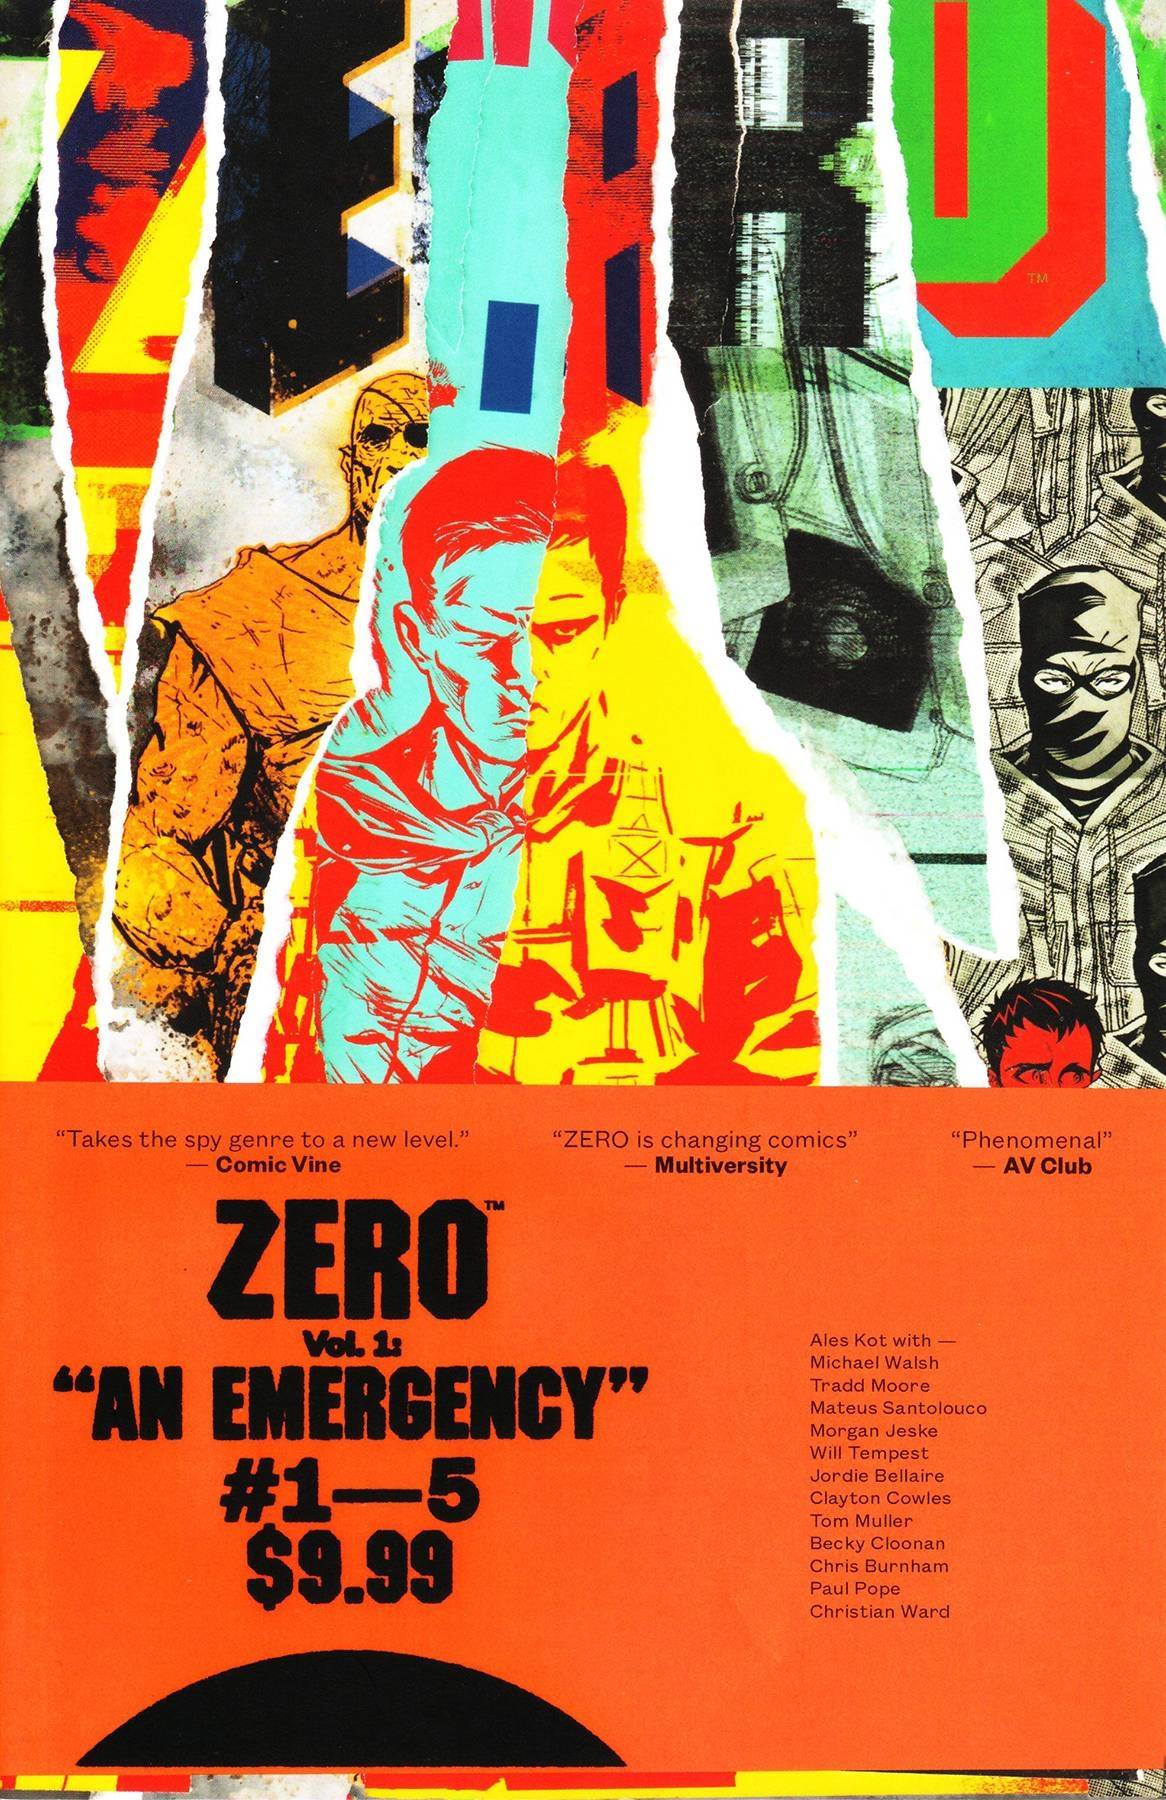 Zero Vol. 01 An Emergency